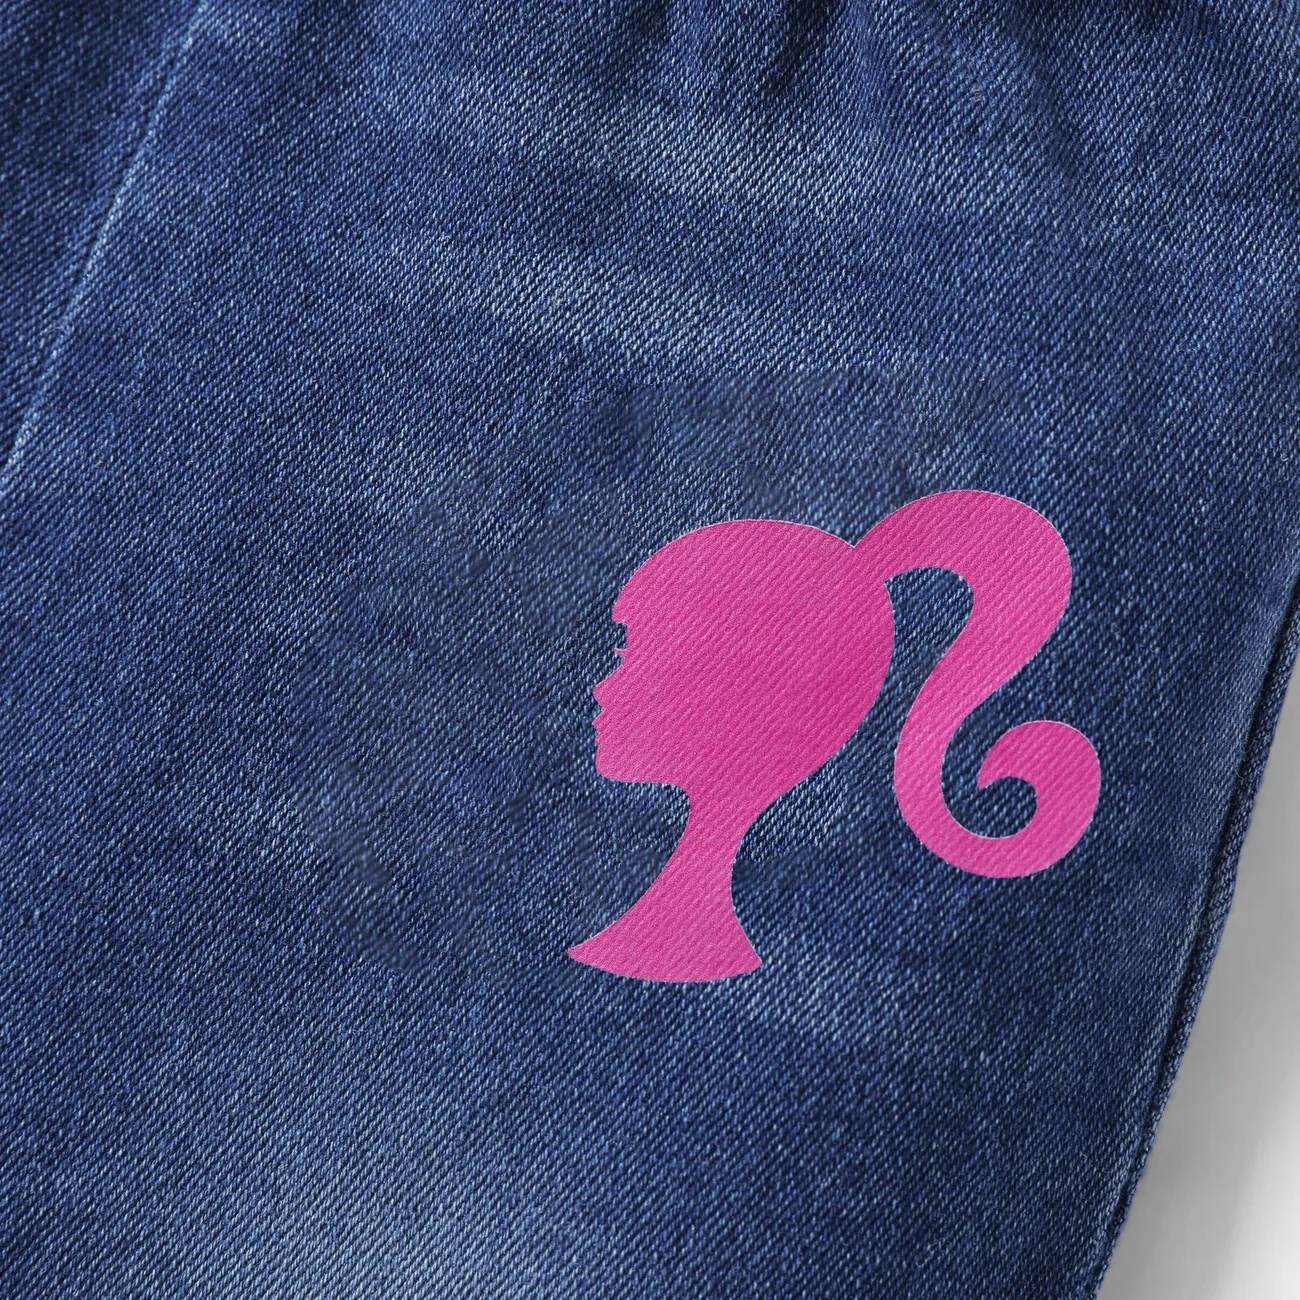 Barbie Fille Couture de tissus Doux Jeans Un jean bleu big image 1